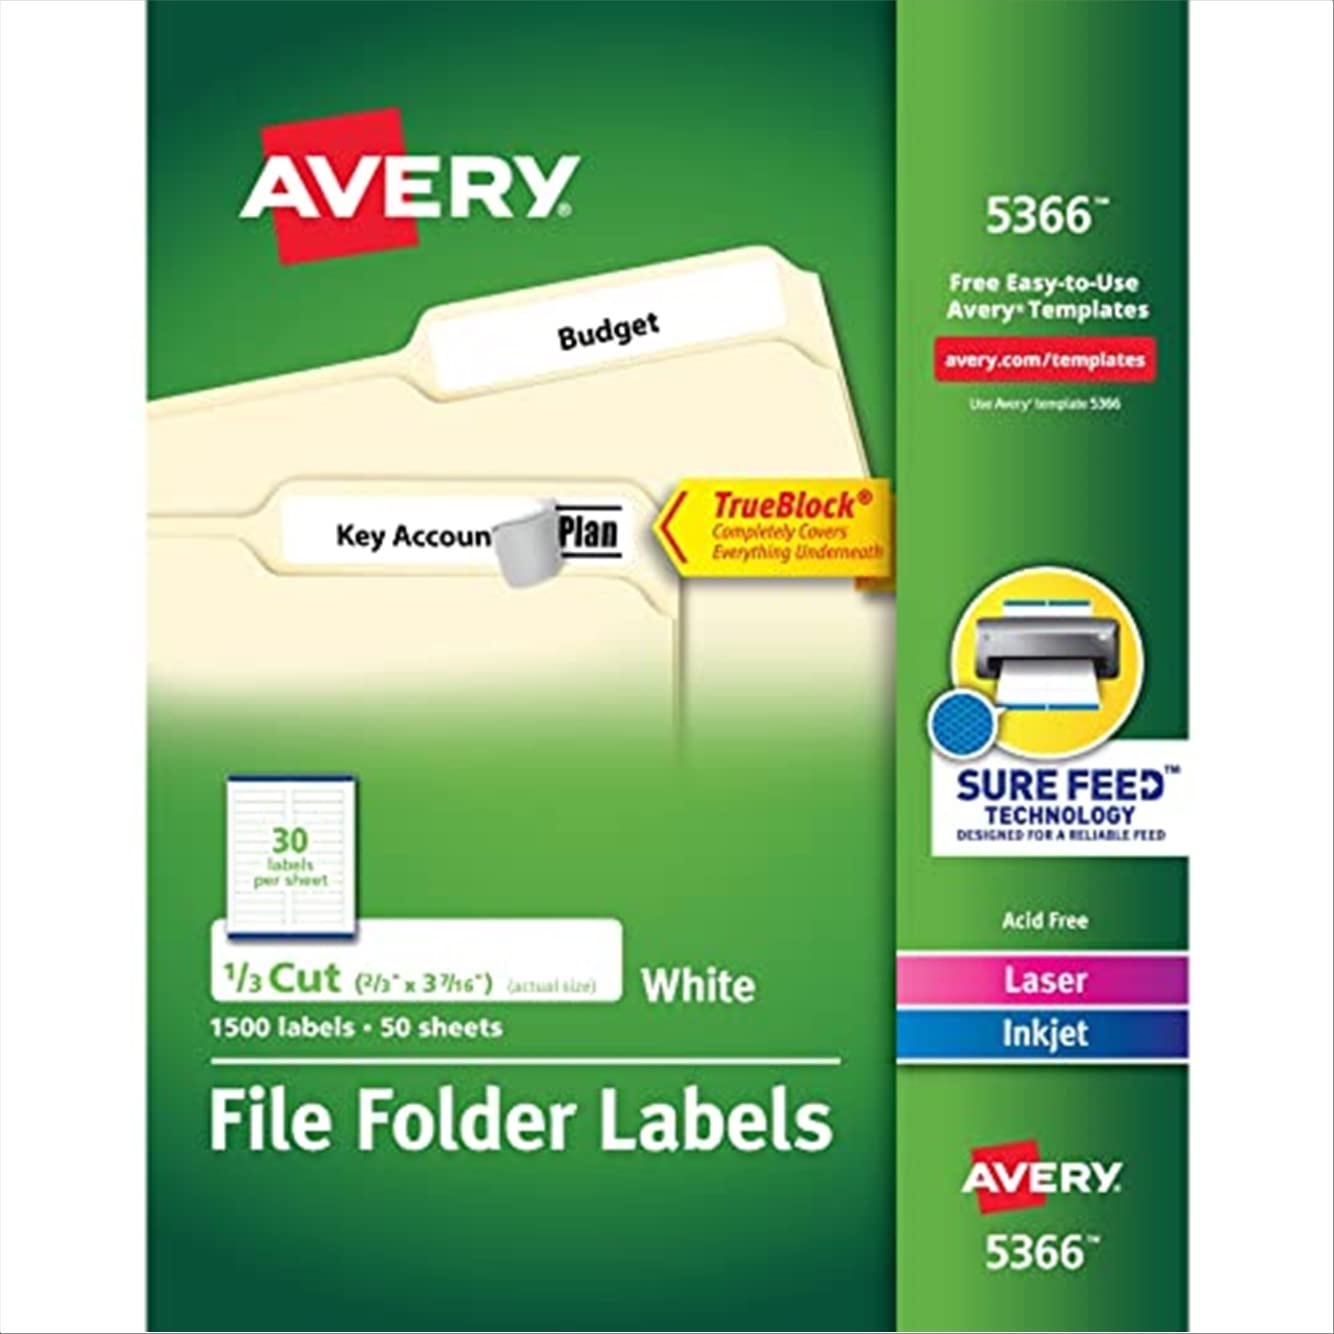 Avery Этикетки для папок с файлами для лазерных и струйных принтеров с технологией TrueBlock